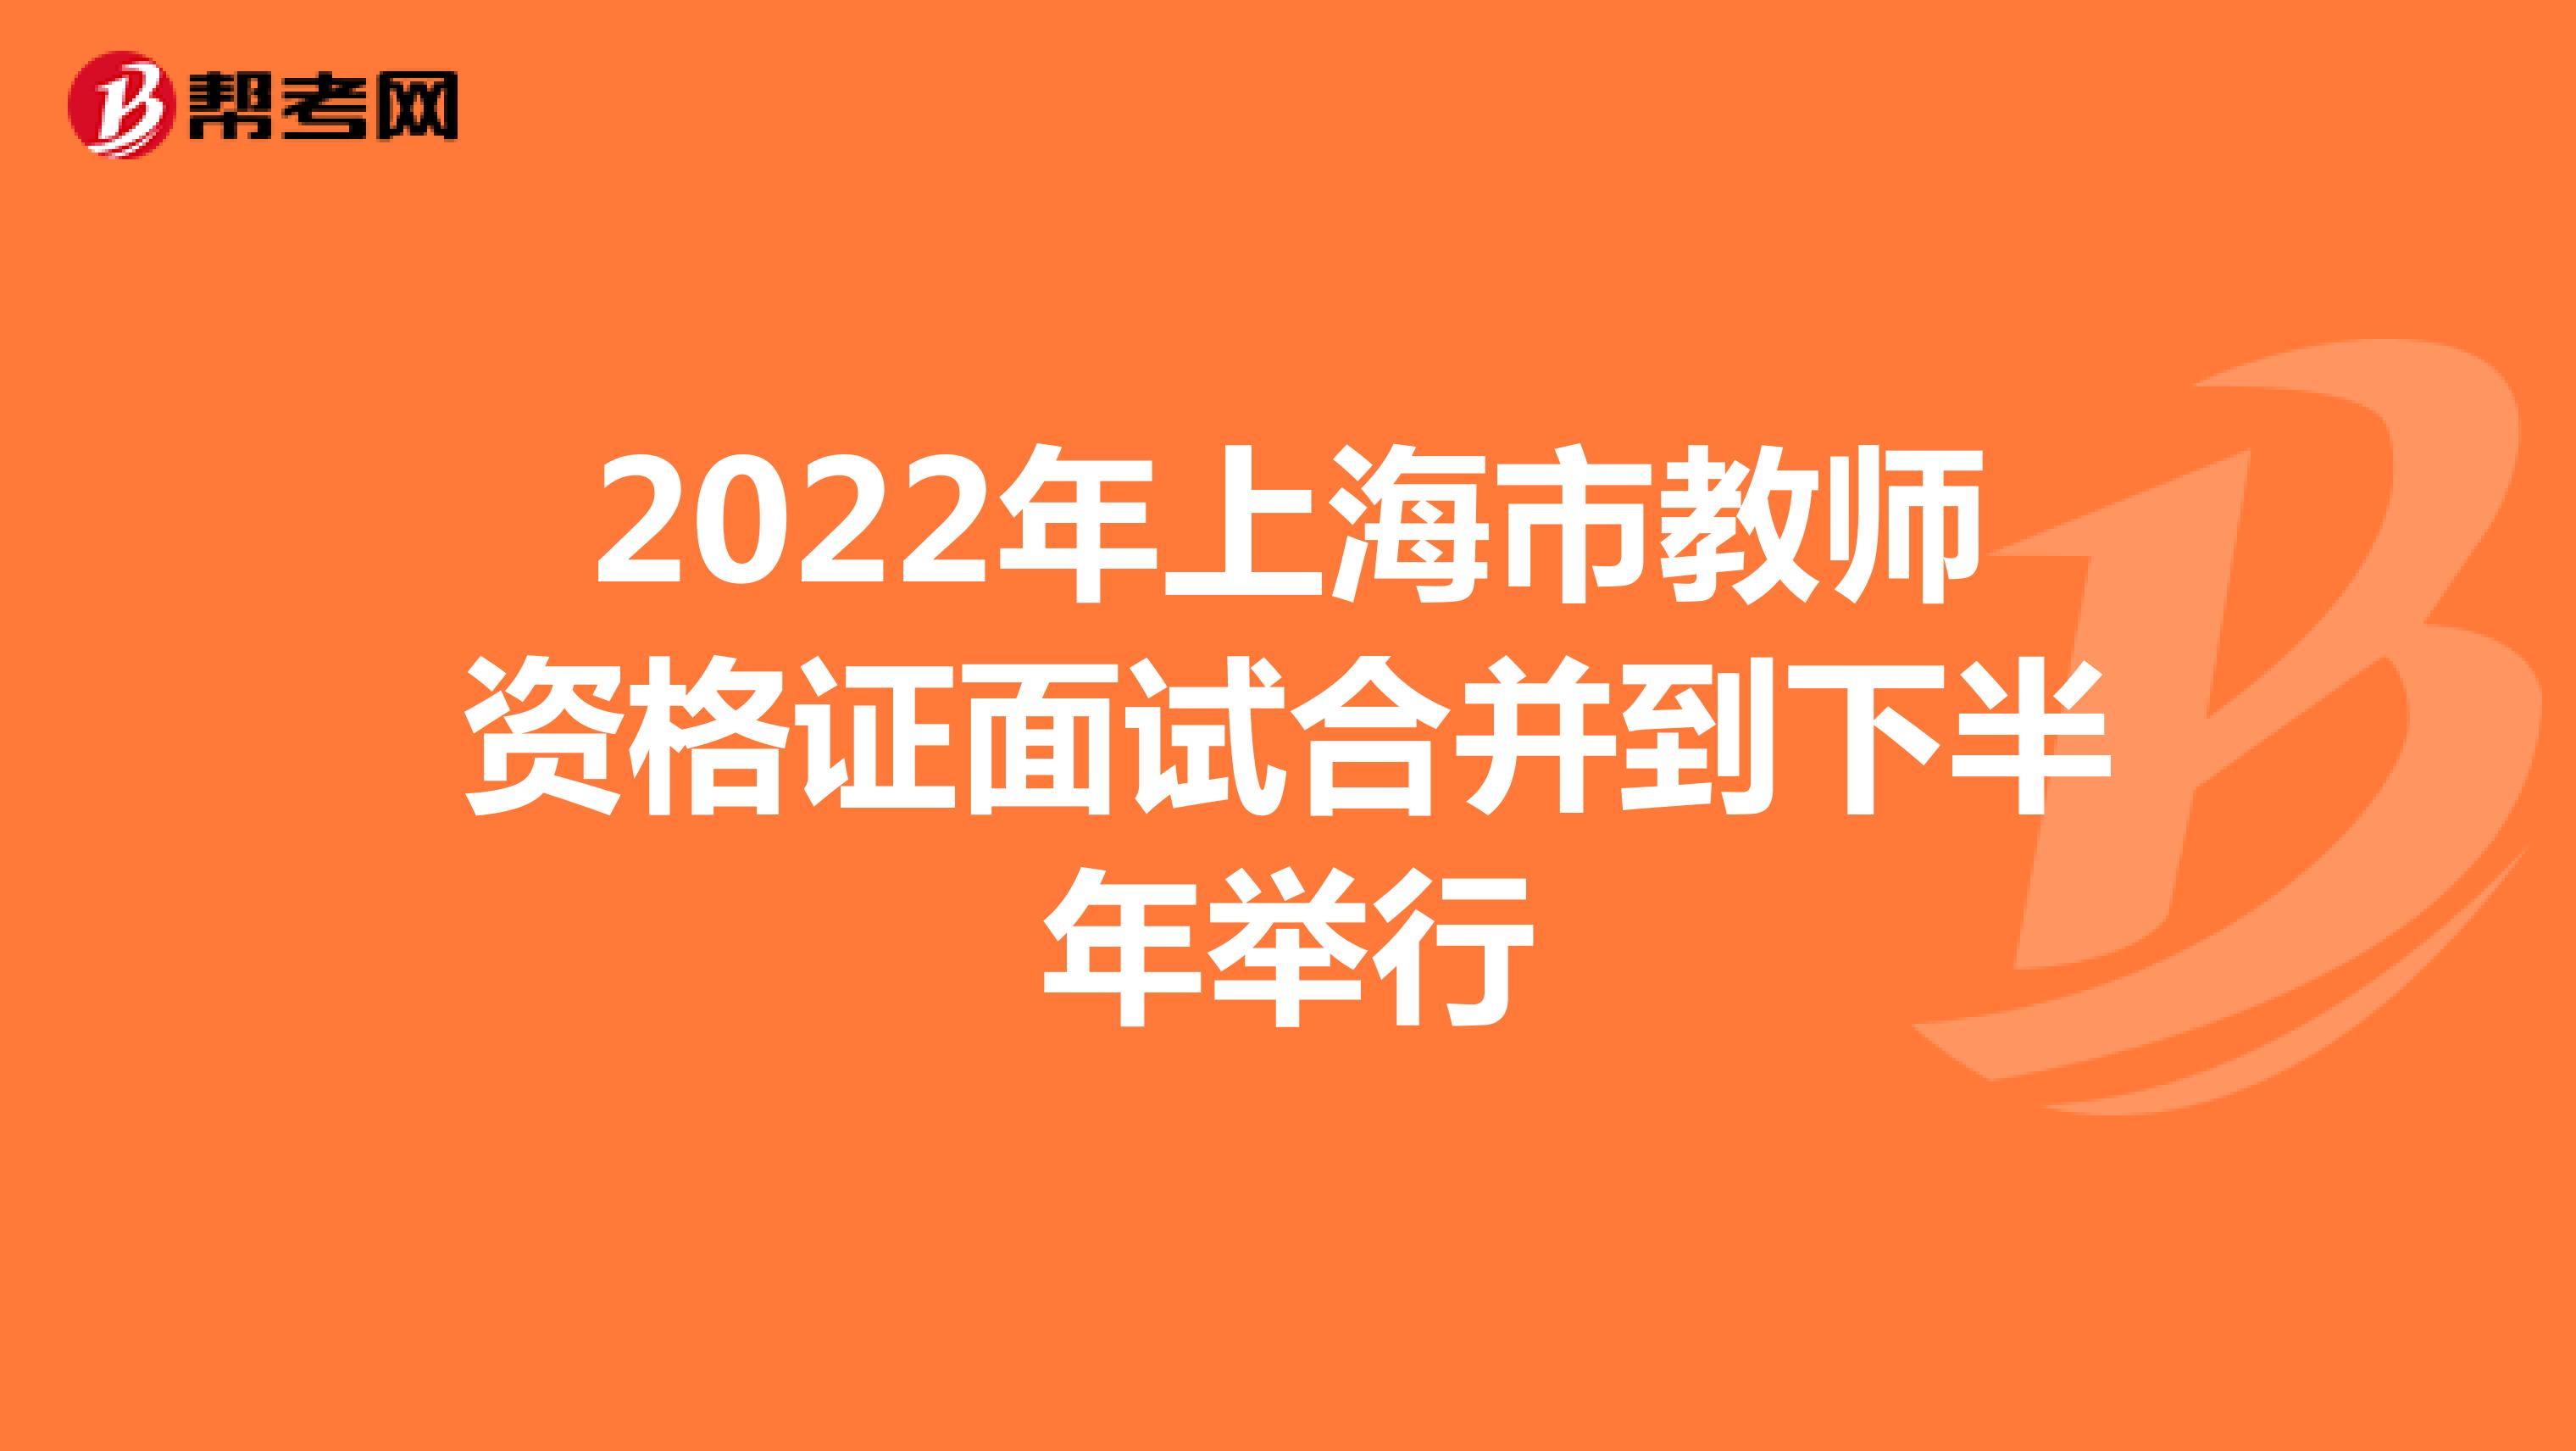 2022年上海市教师资格证面试合并到下半年举行